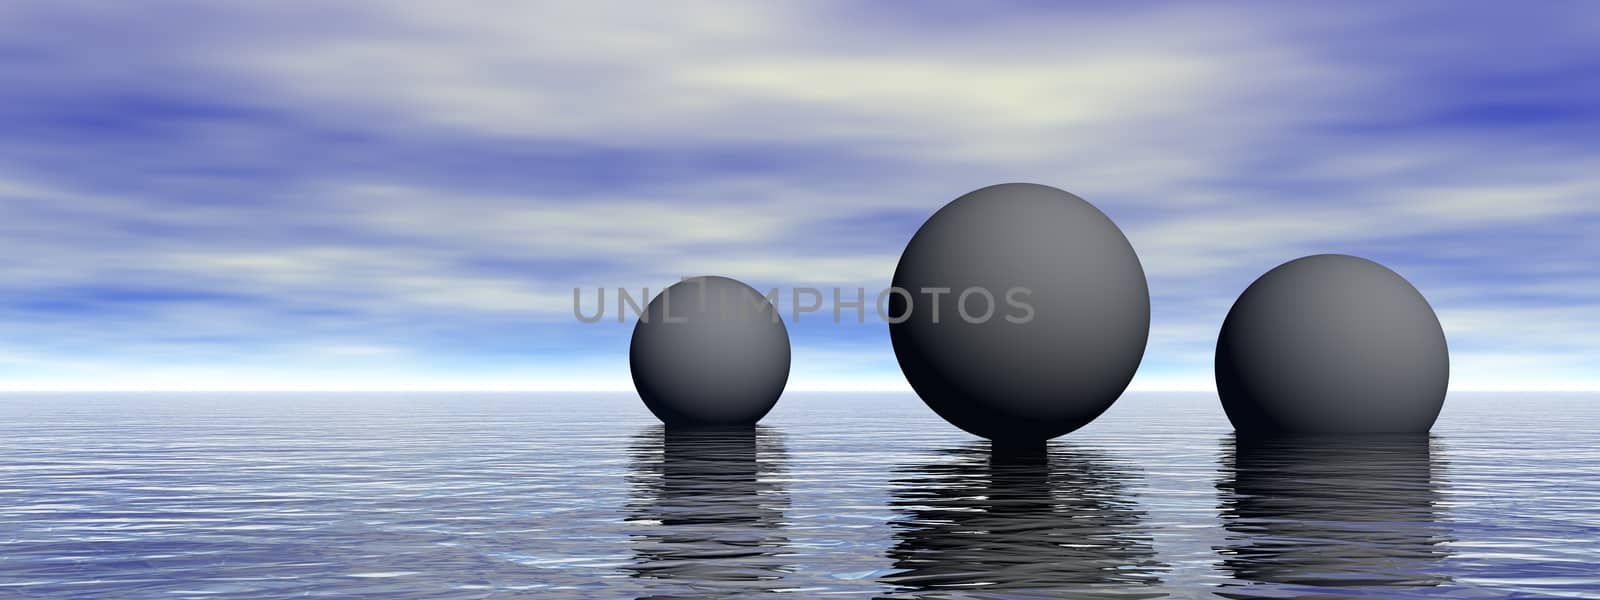 3D spheres in calm ocean waters